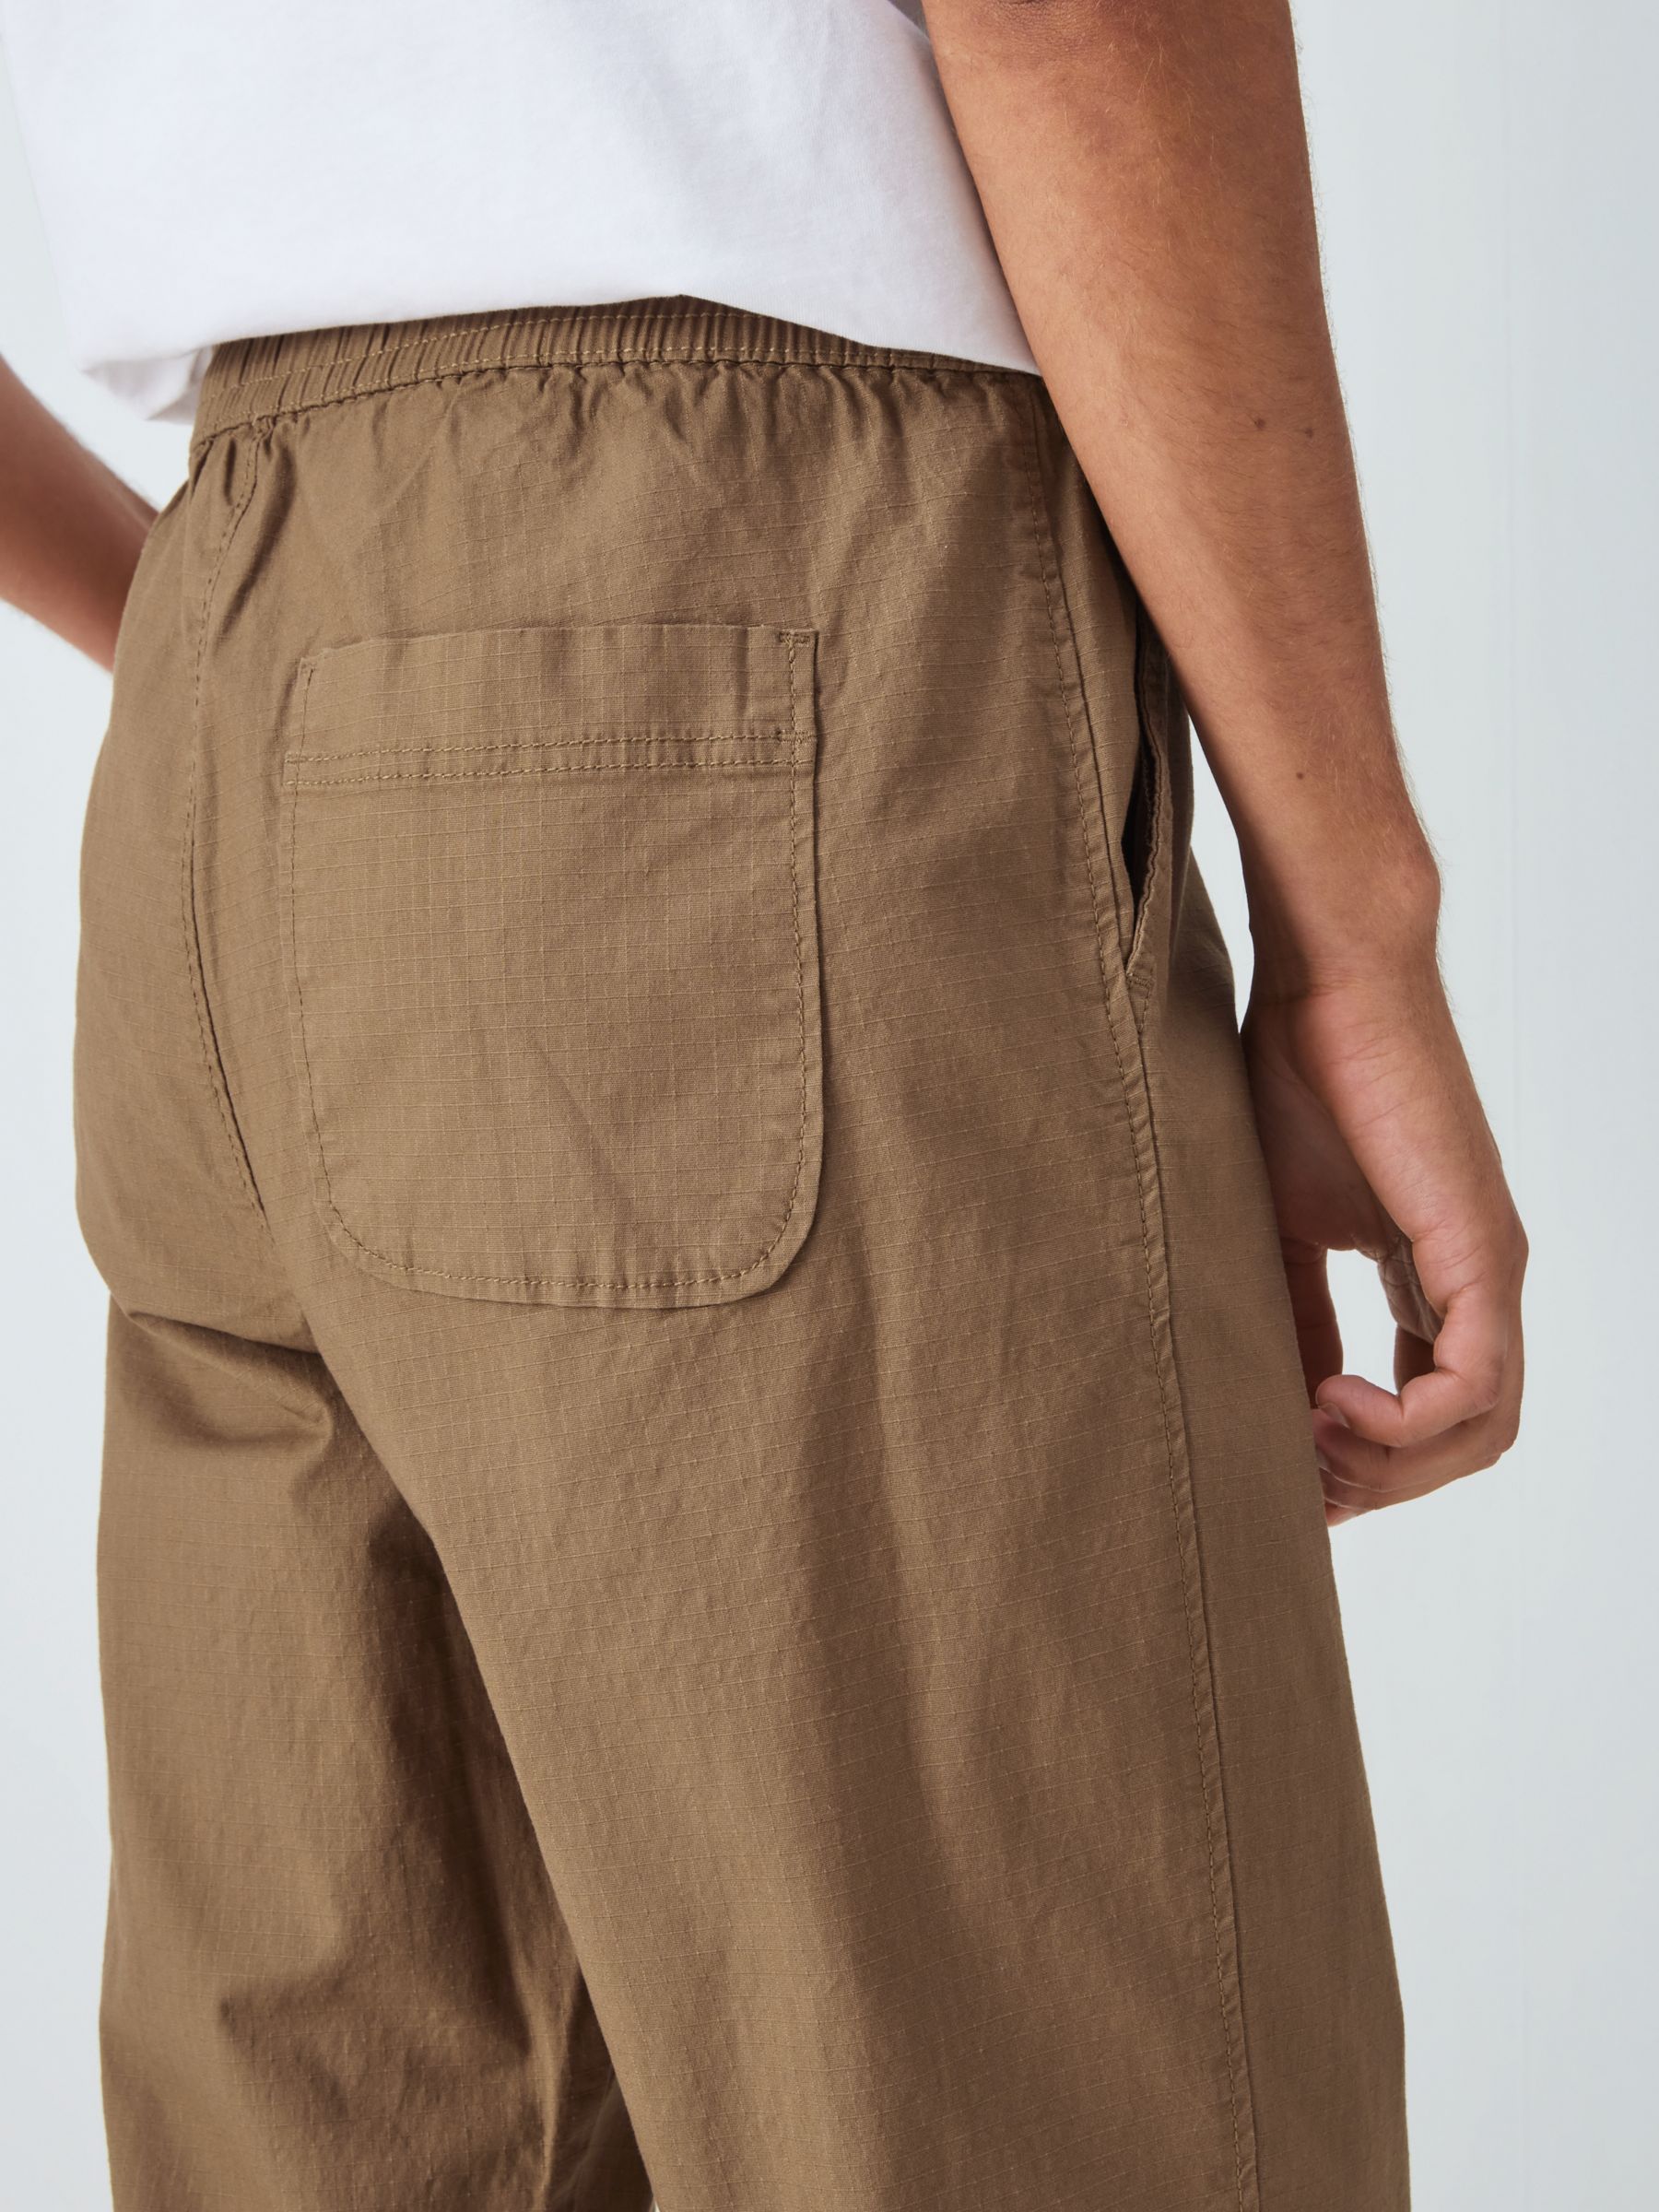 120 Best MEN'S COTTON PANTS ideas  cotton pants men, cotton pants, trousers  details